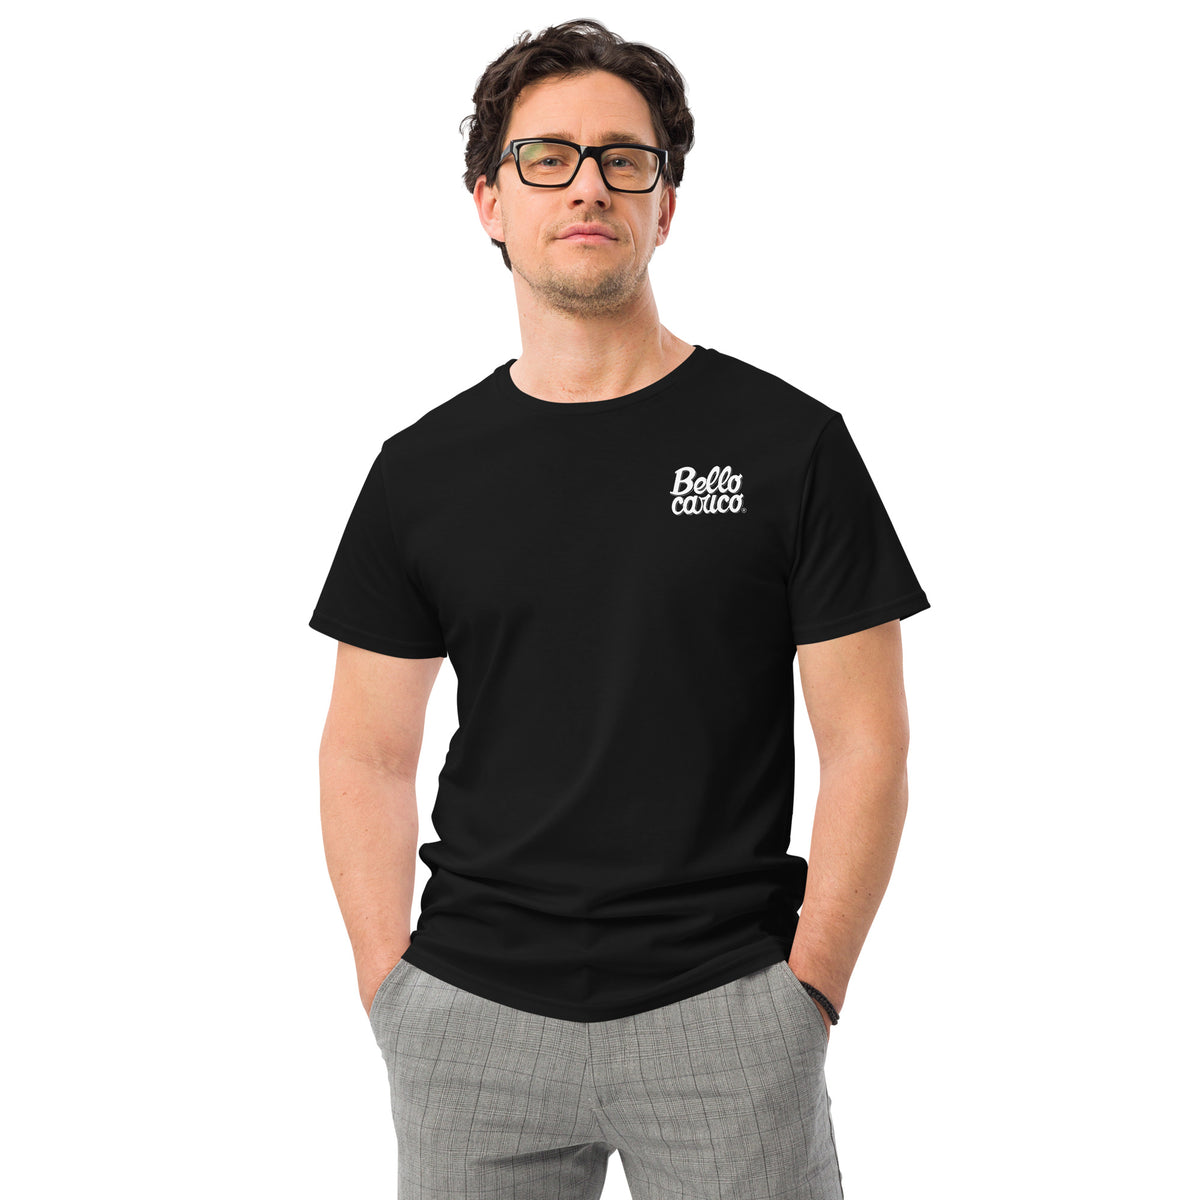 T-shirt in cotone premium uomo bello carico small logo